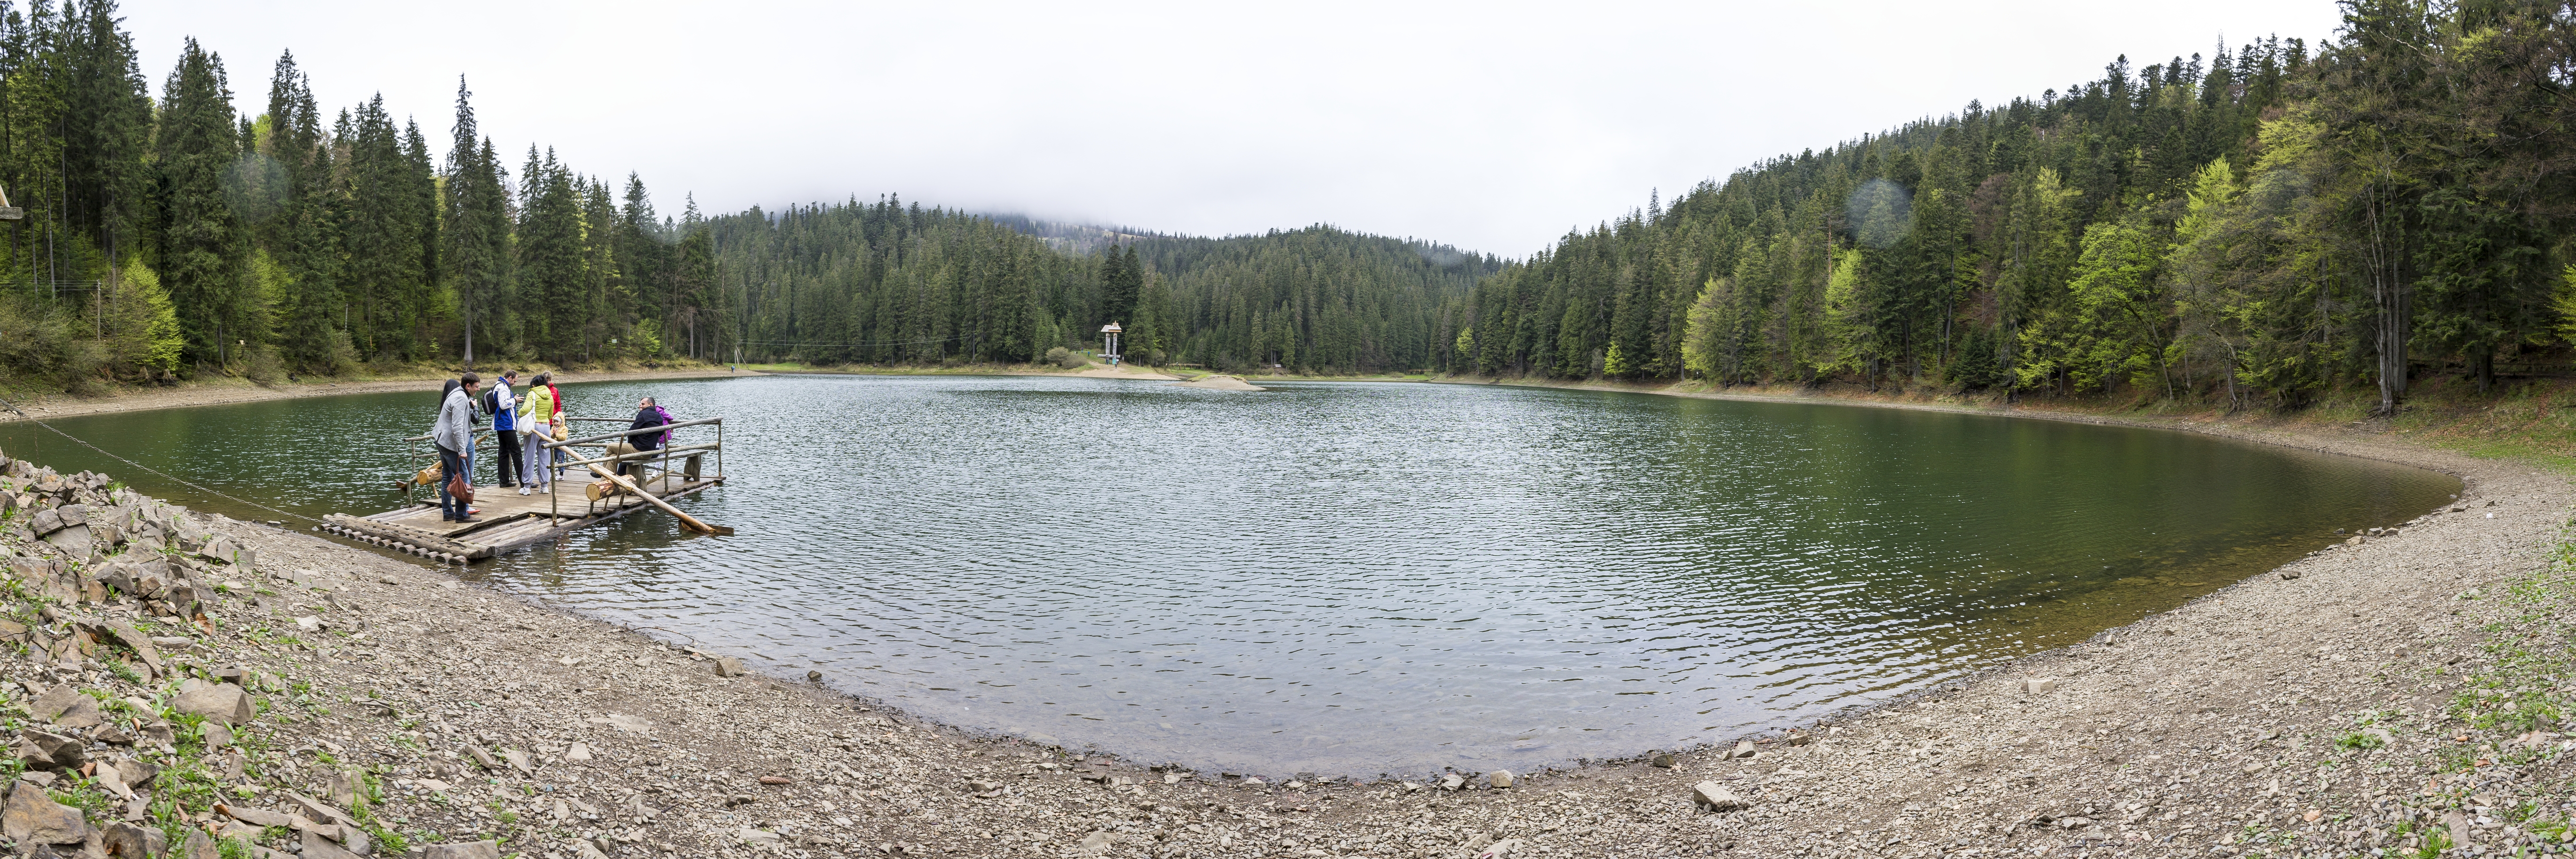 Synevyr lake panoramic view